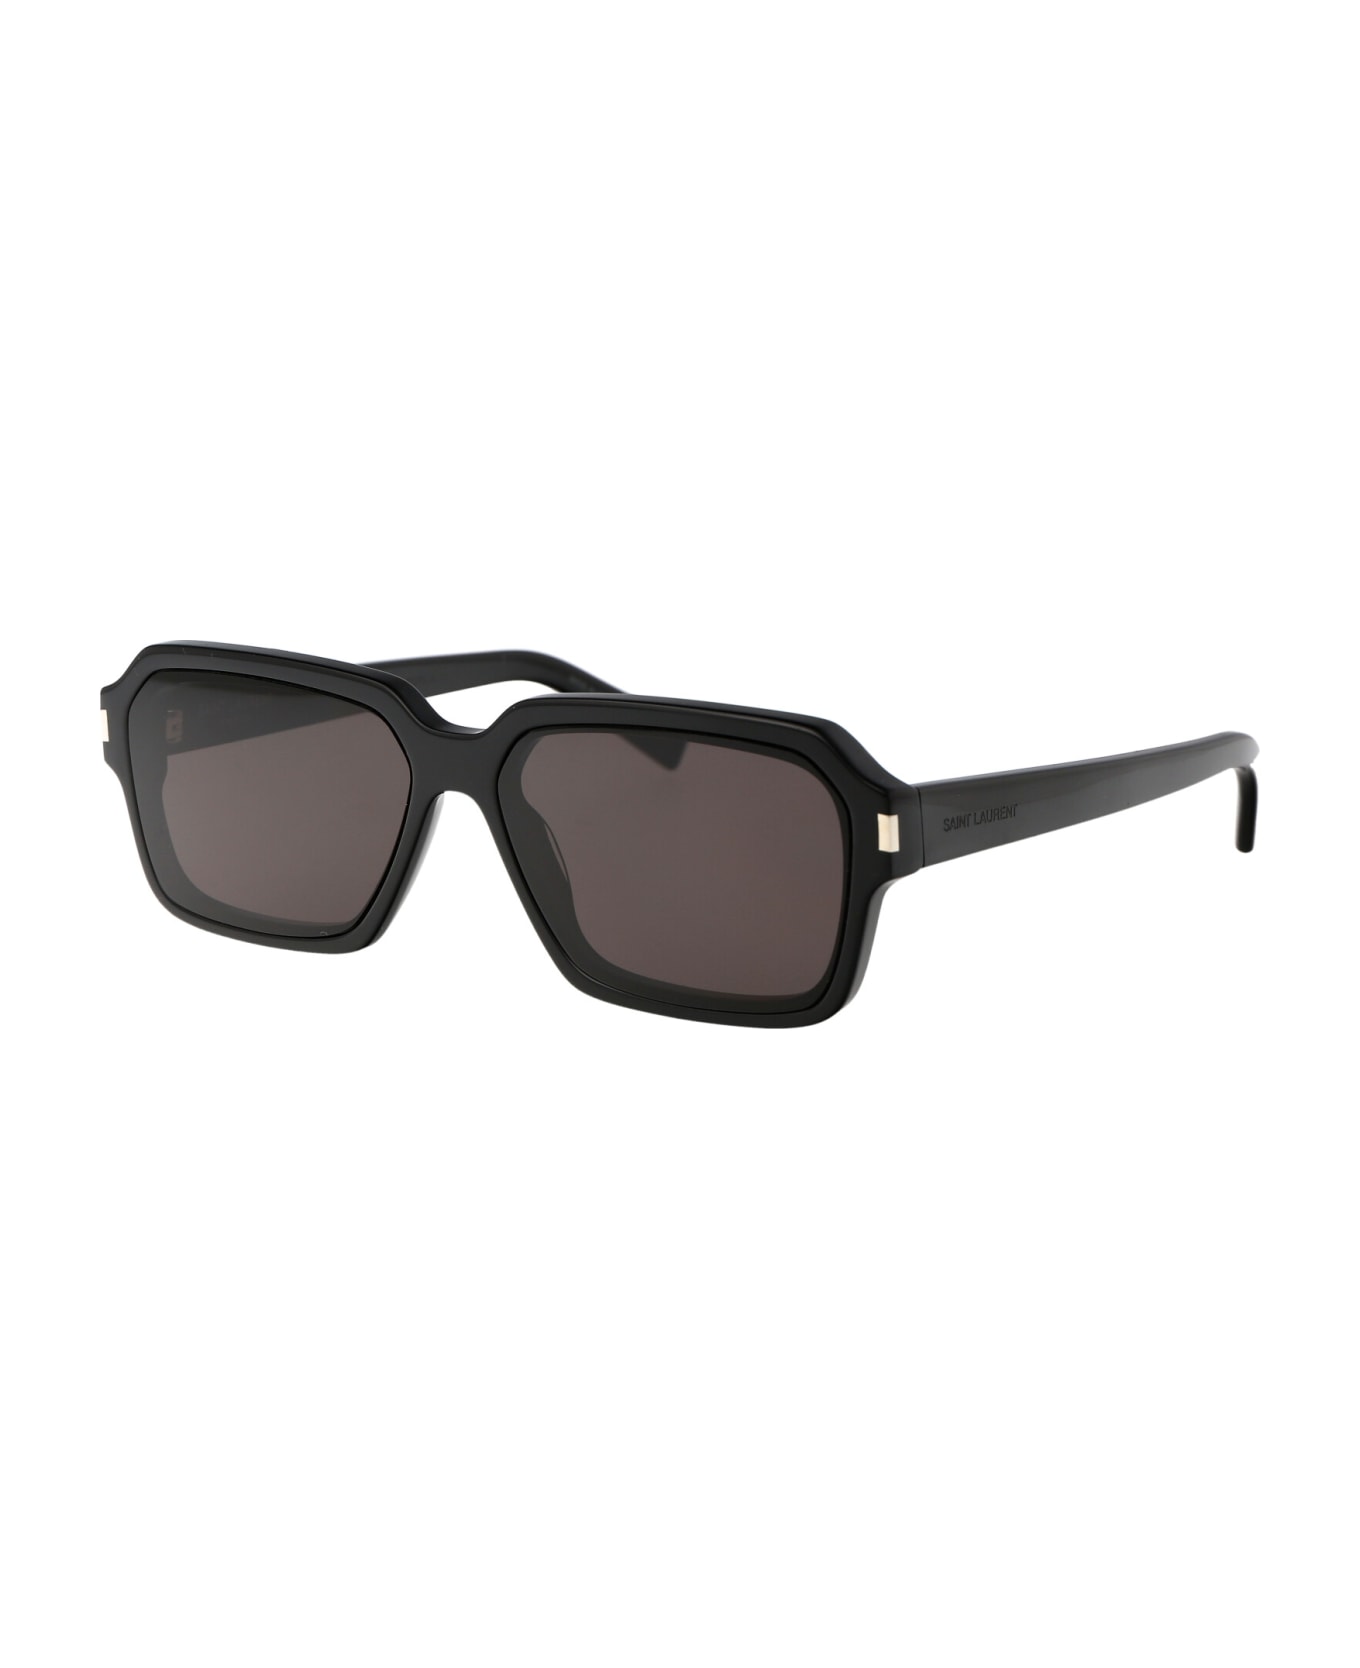 Saint Laurent Eyewear Sl 611 Sunglasses - 001 BLACK BLACK BLACK